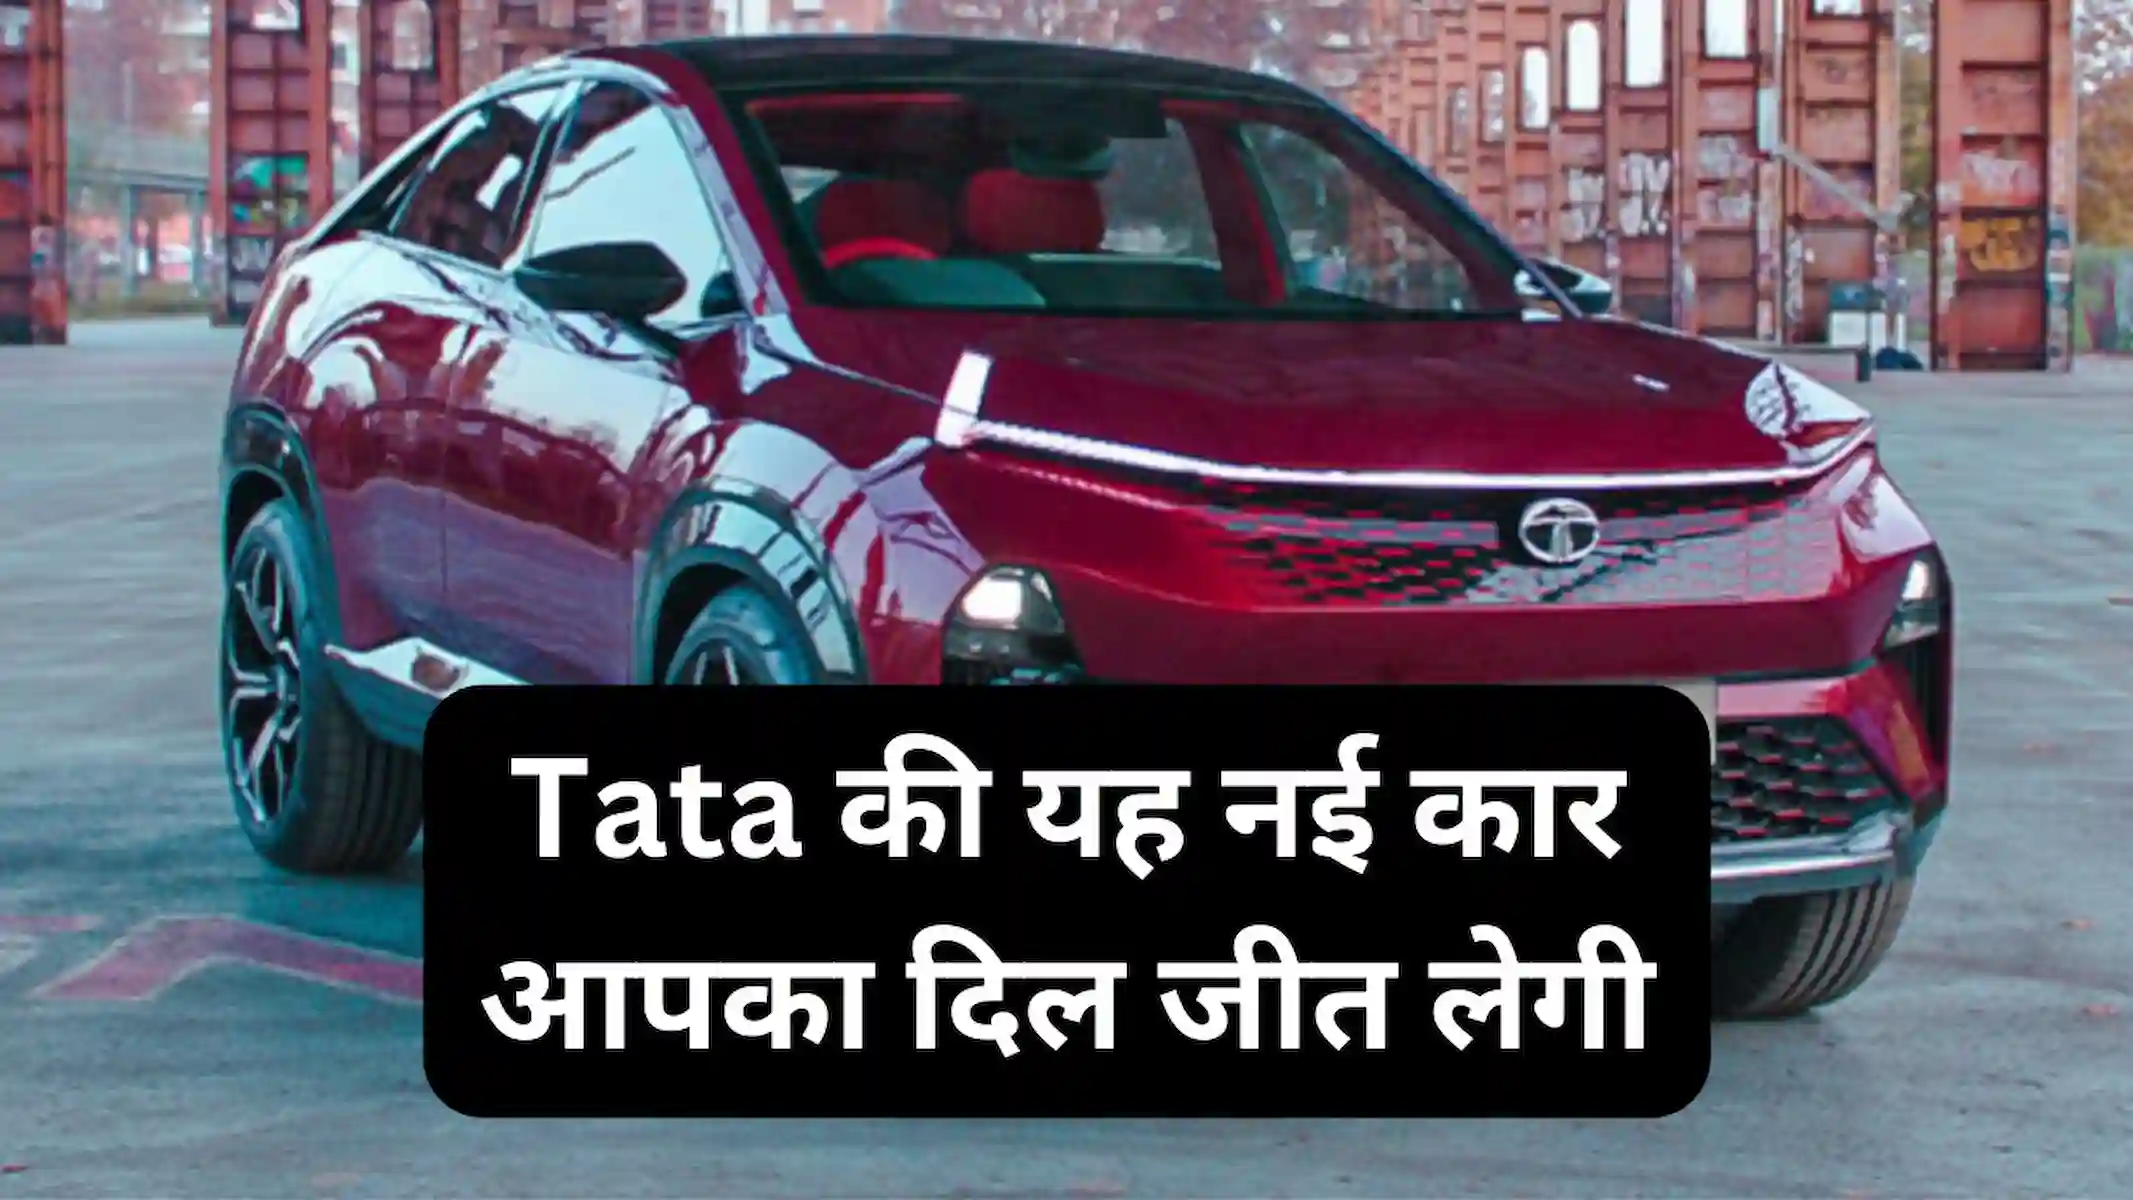 Tata की यह नई कार आपका दिल जीत लेगी